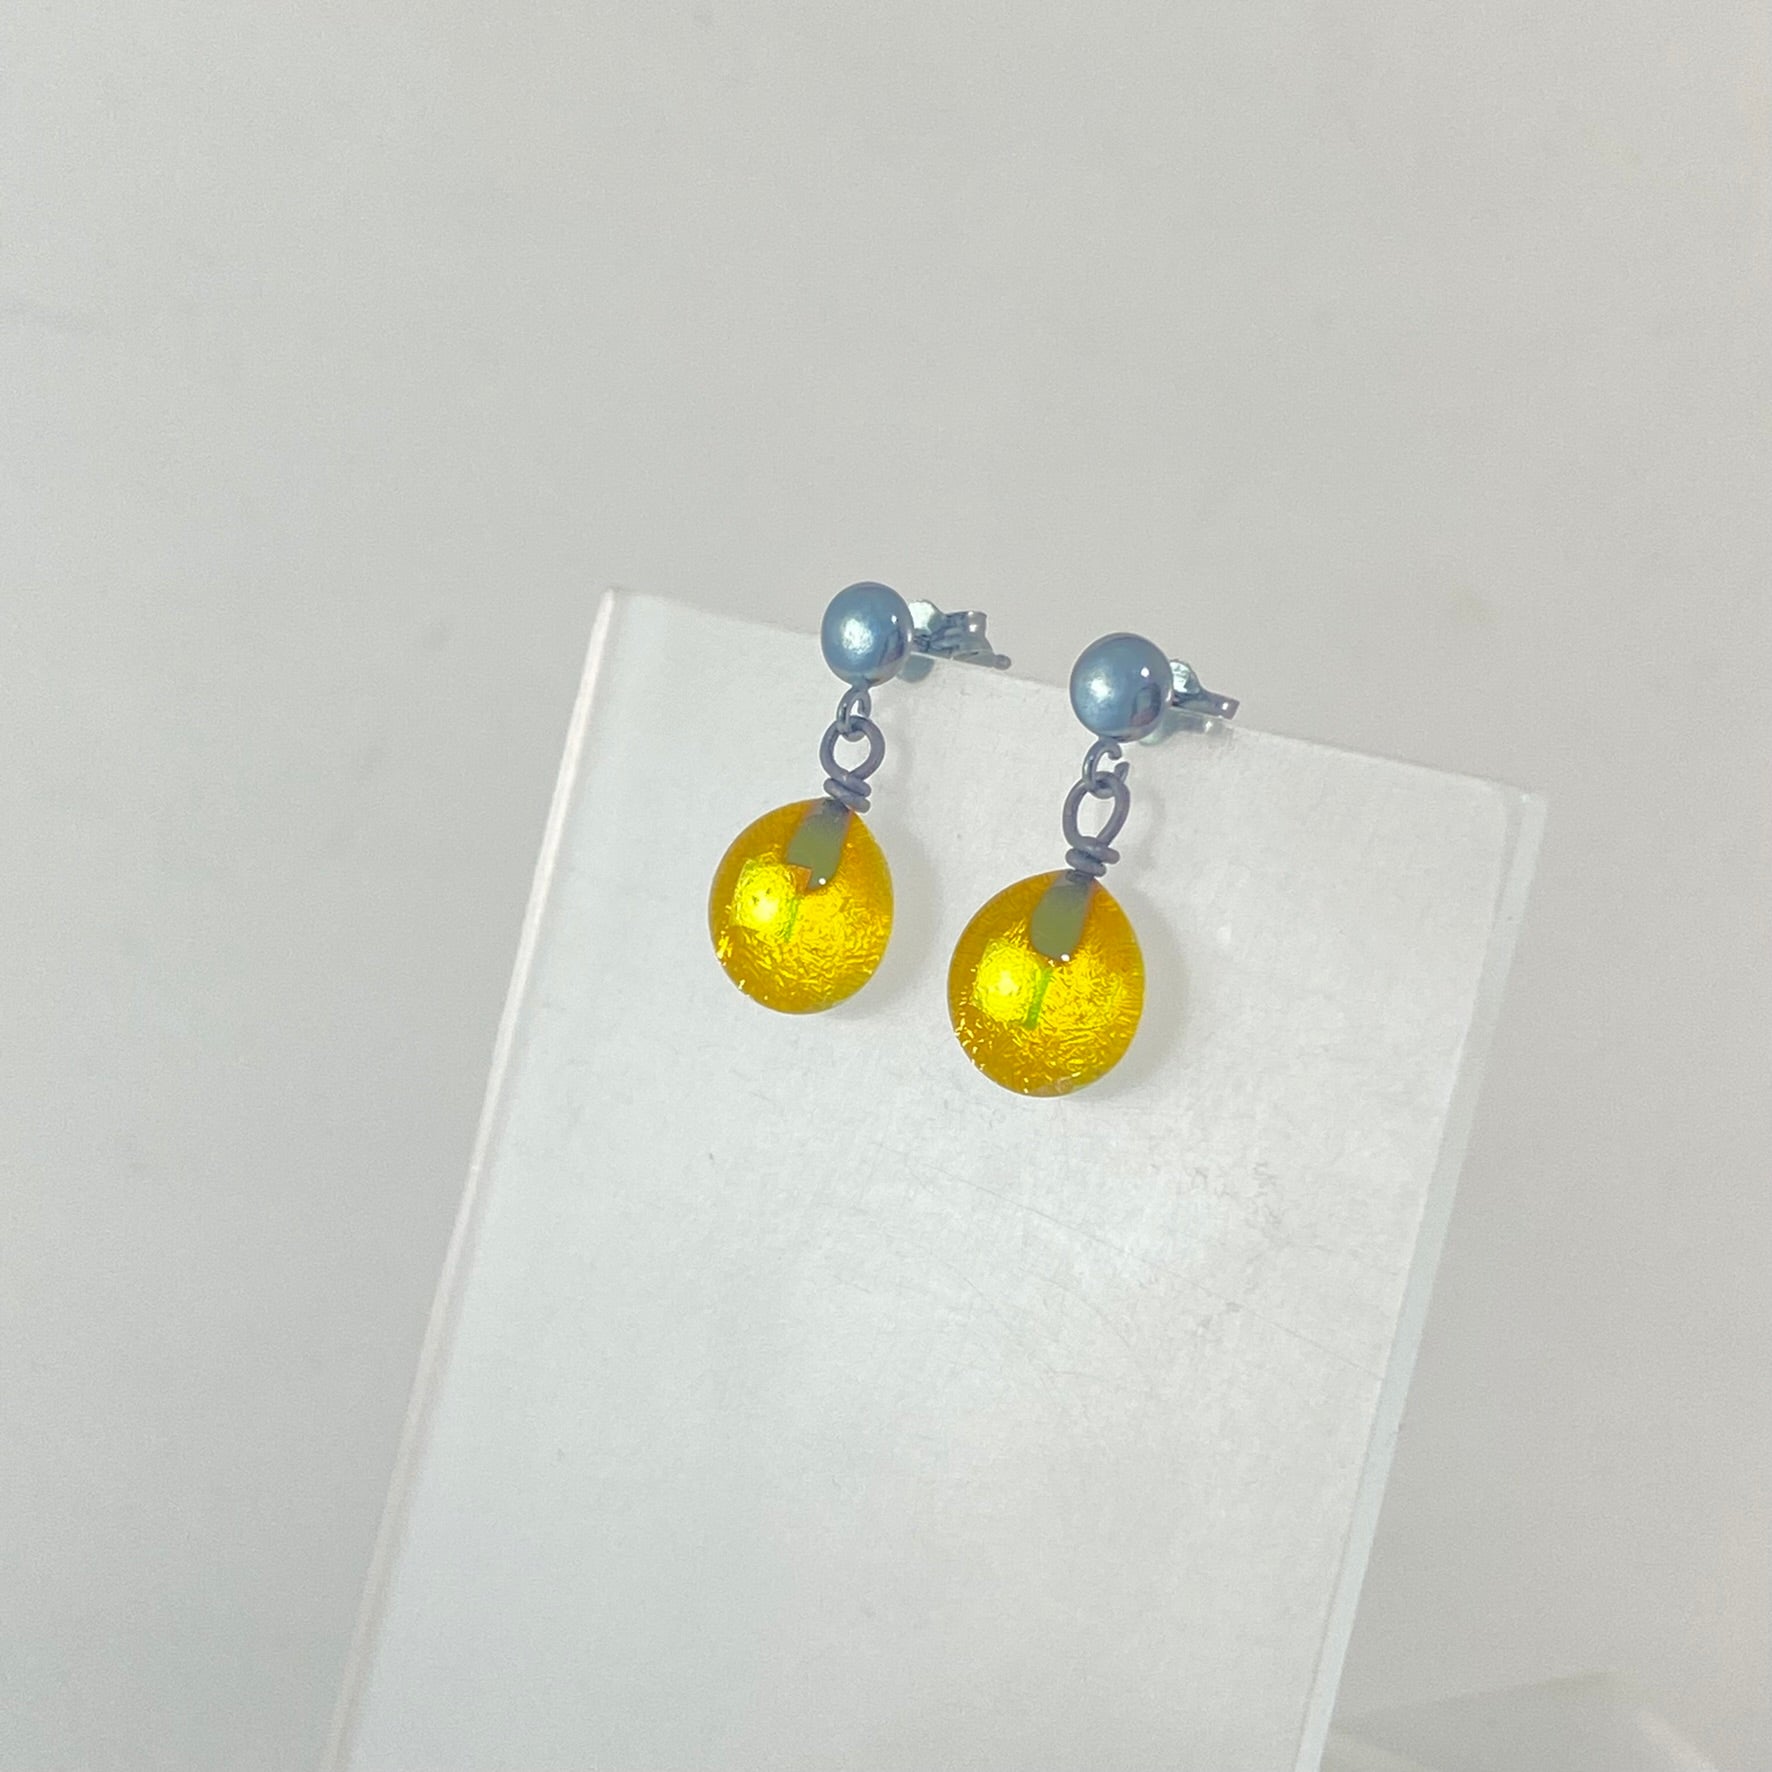 Oxidized Post Space Ball Earrings in Lemon